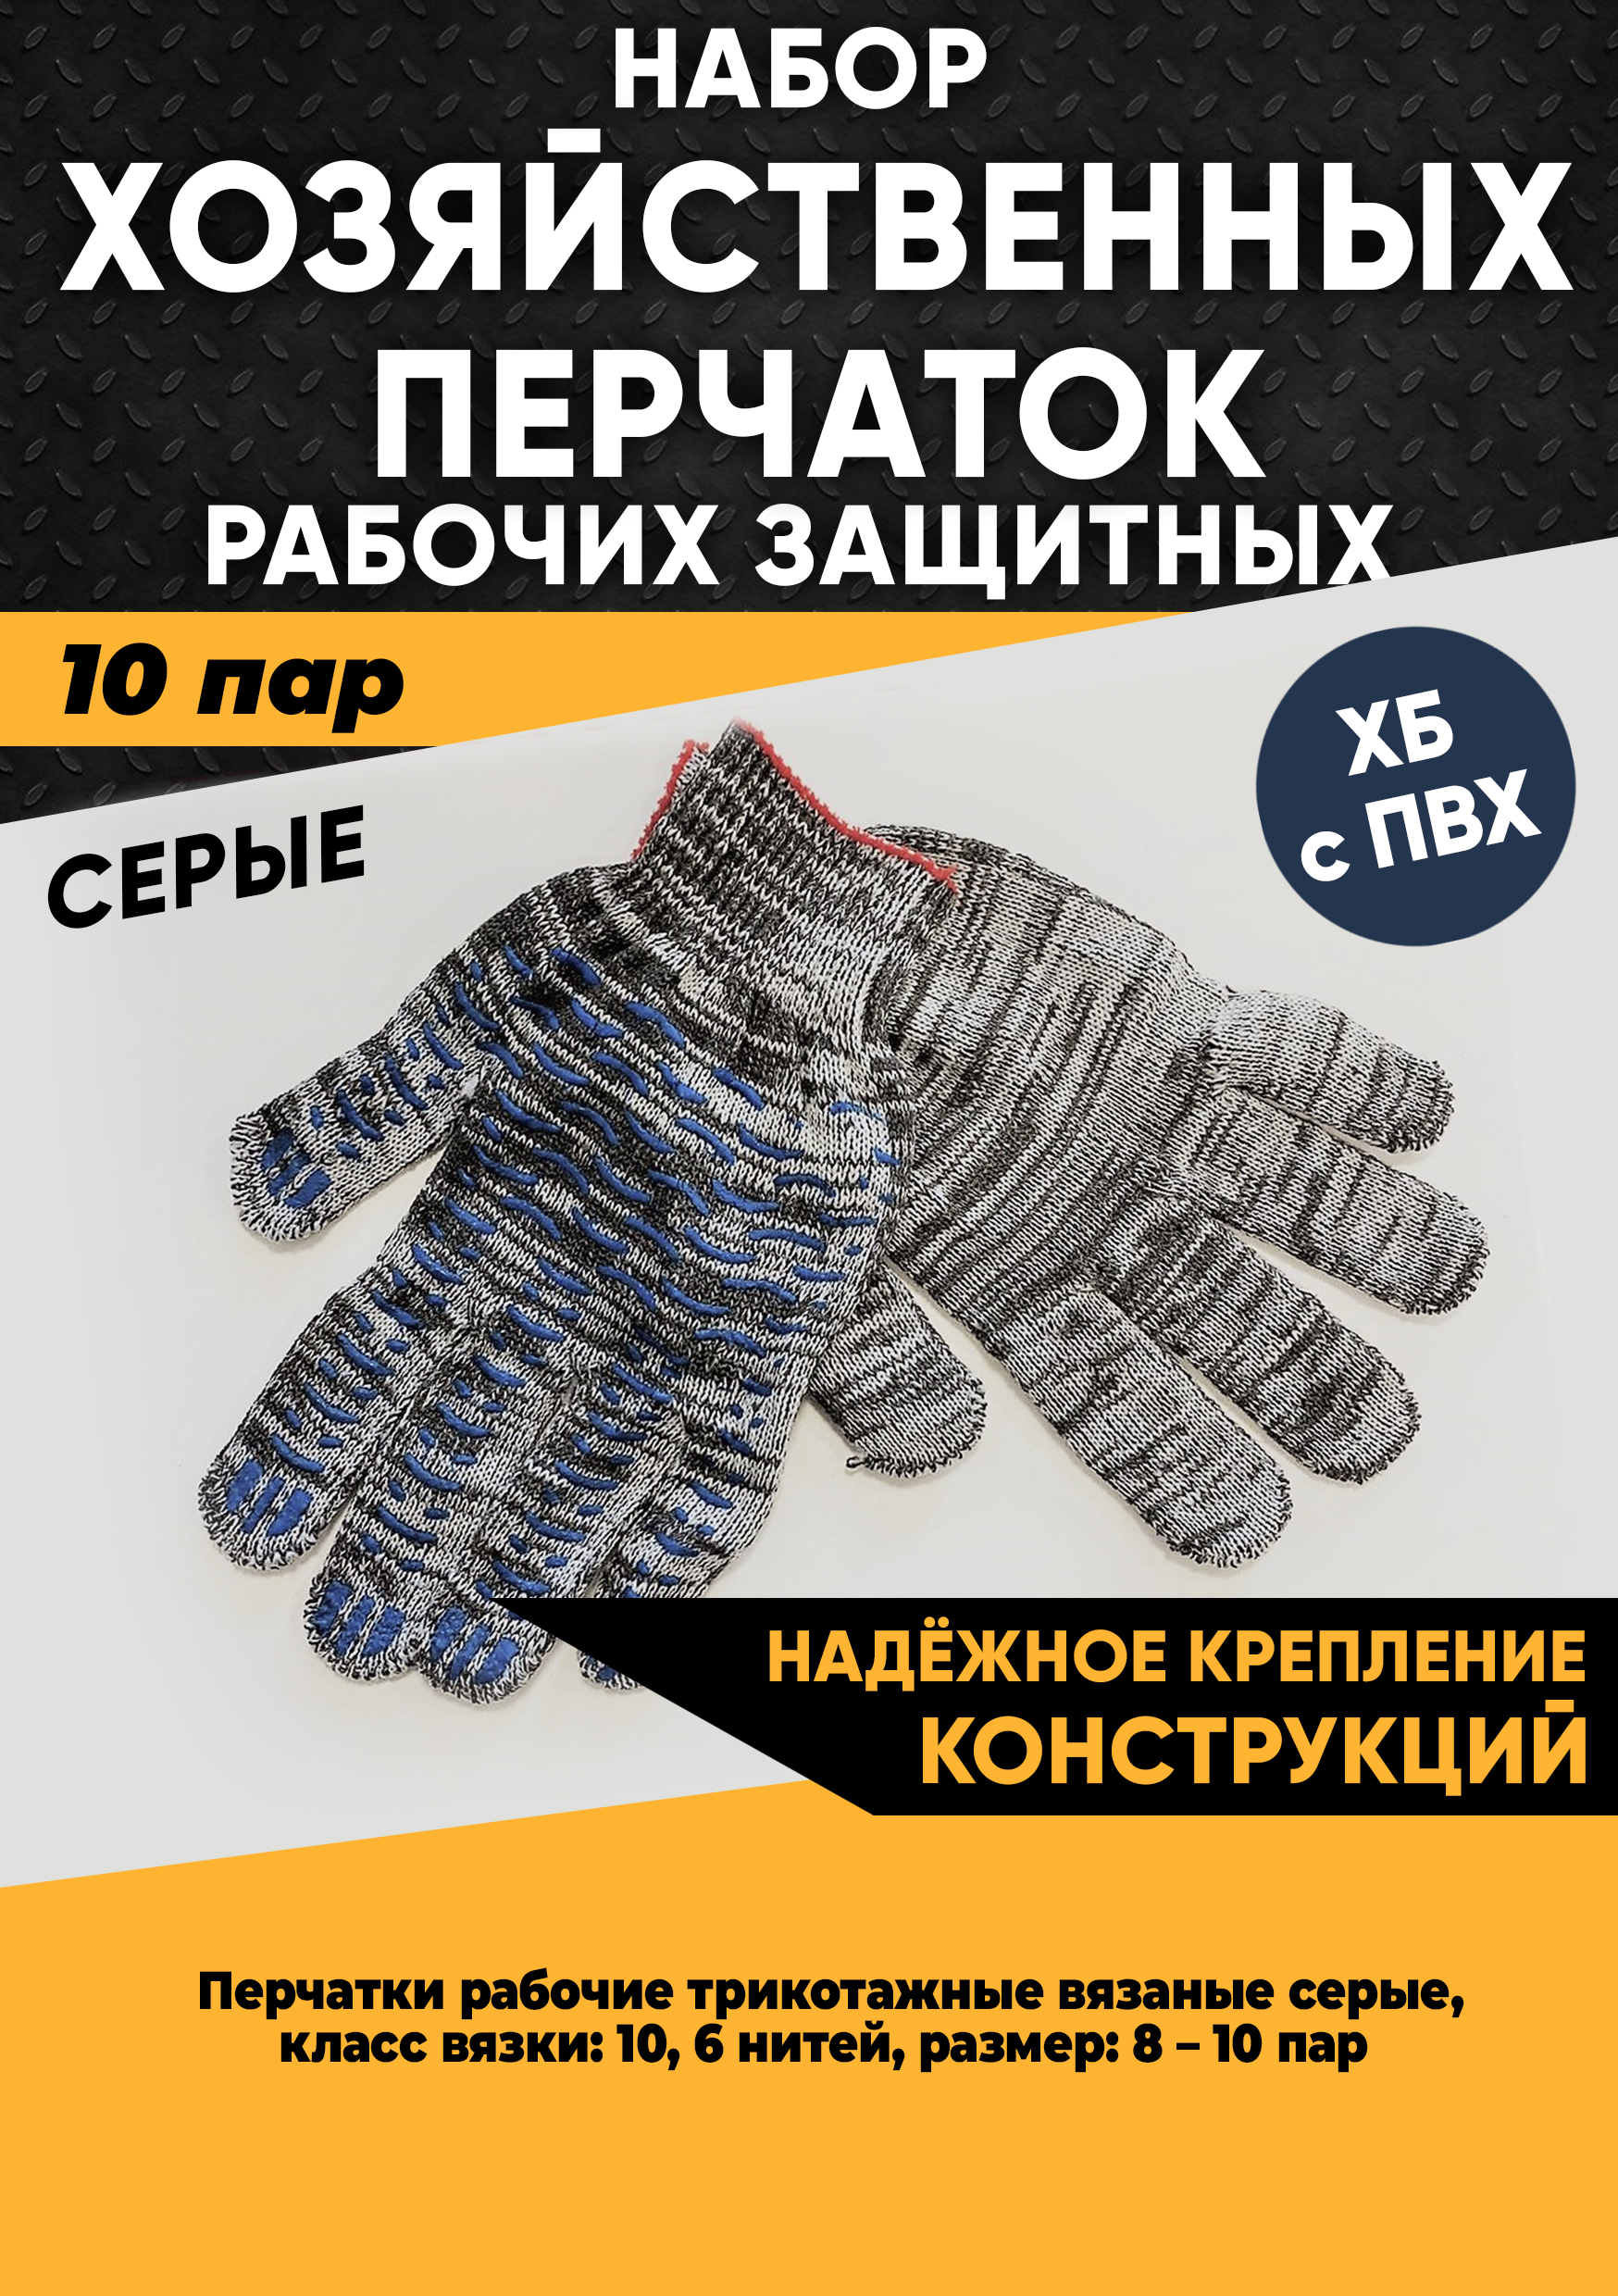 Хозяйственные перчатки KraSimall рабочие защитные ХБ с ПВХ, 6 нитей, серые, 10 пар, 100265 защитные рабочие женские перчатки sapset